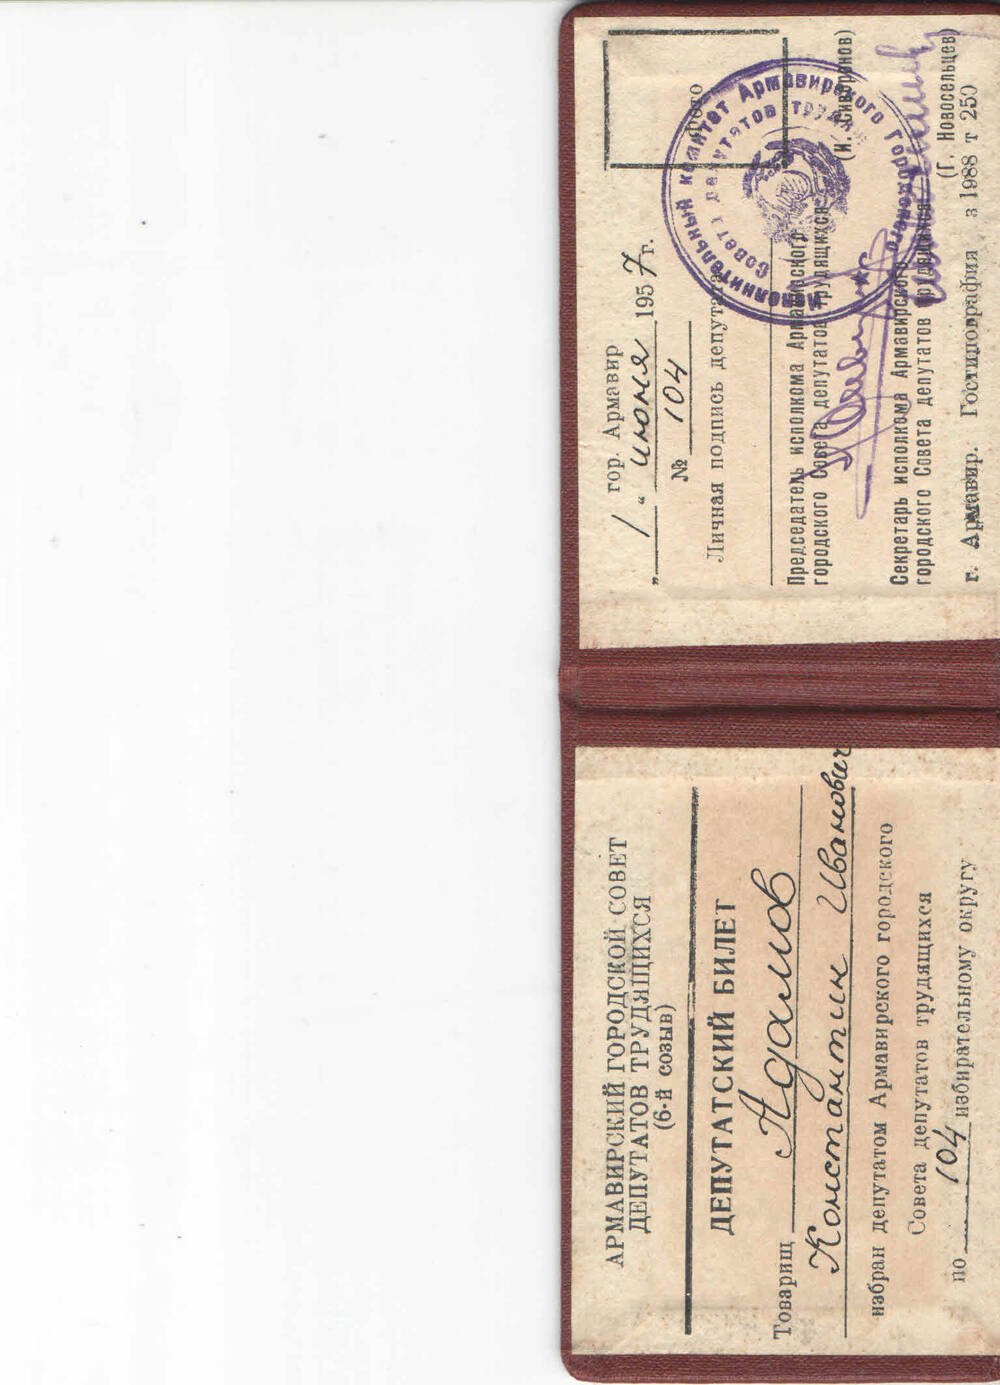 Билет депутатский , 6-го созыва Армавирского горсовета, 1 июня 1957года, по 104 избирательному округу Адамова Константина Ивановича